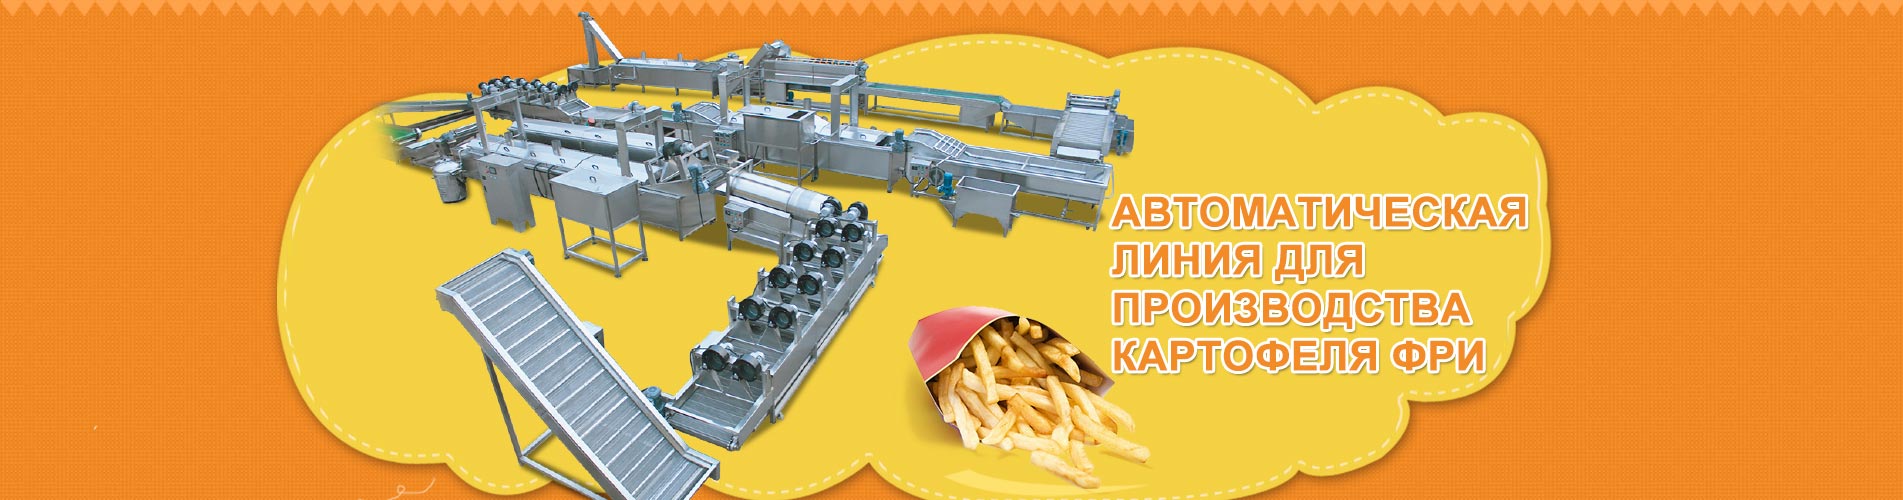 Производственная линия для картофеля фри